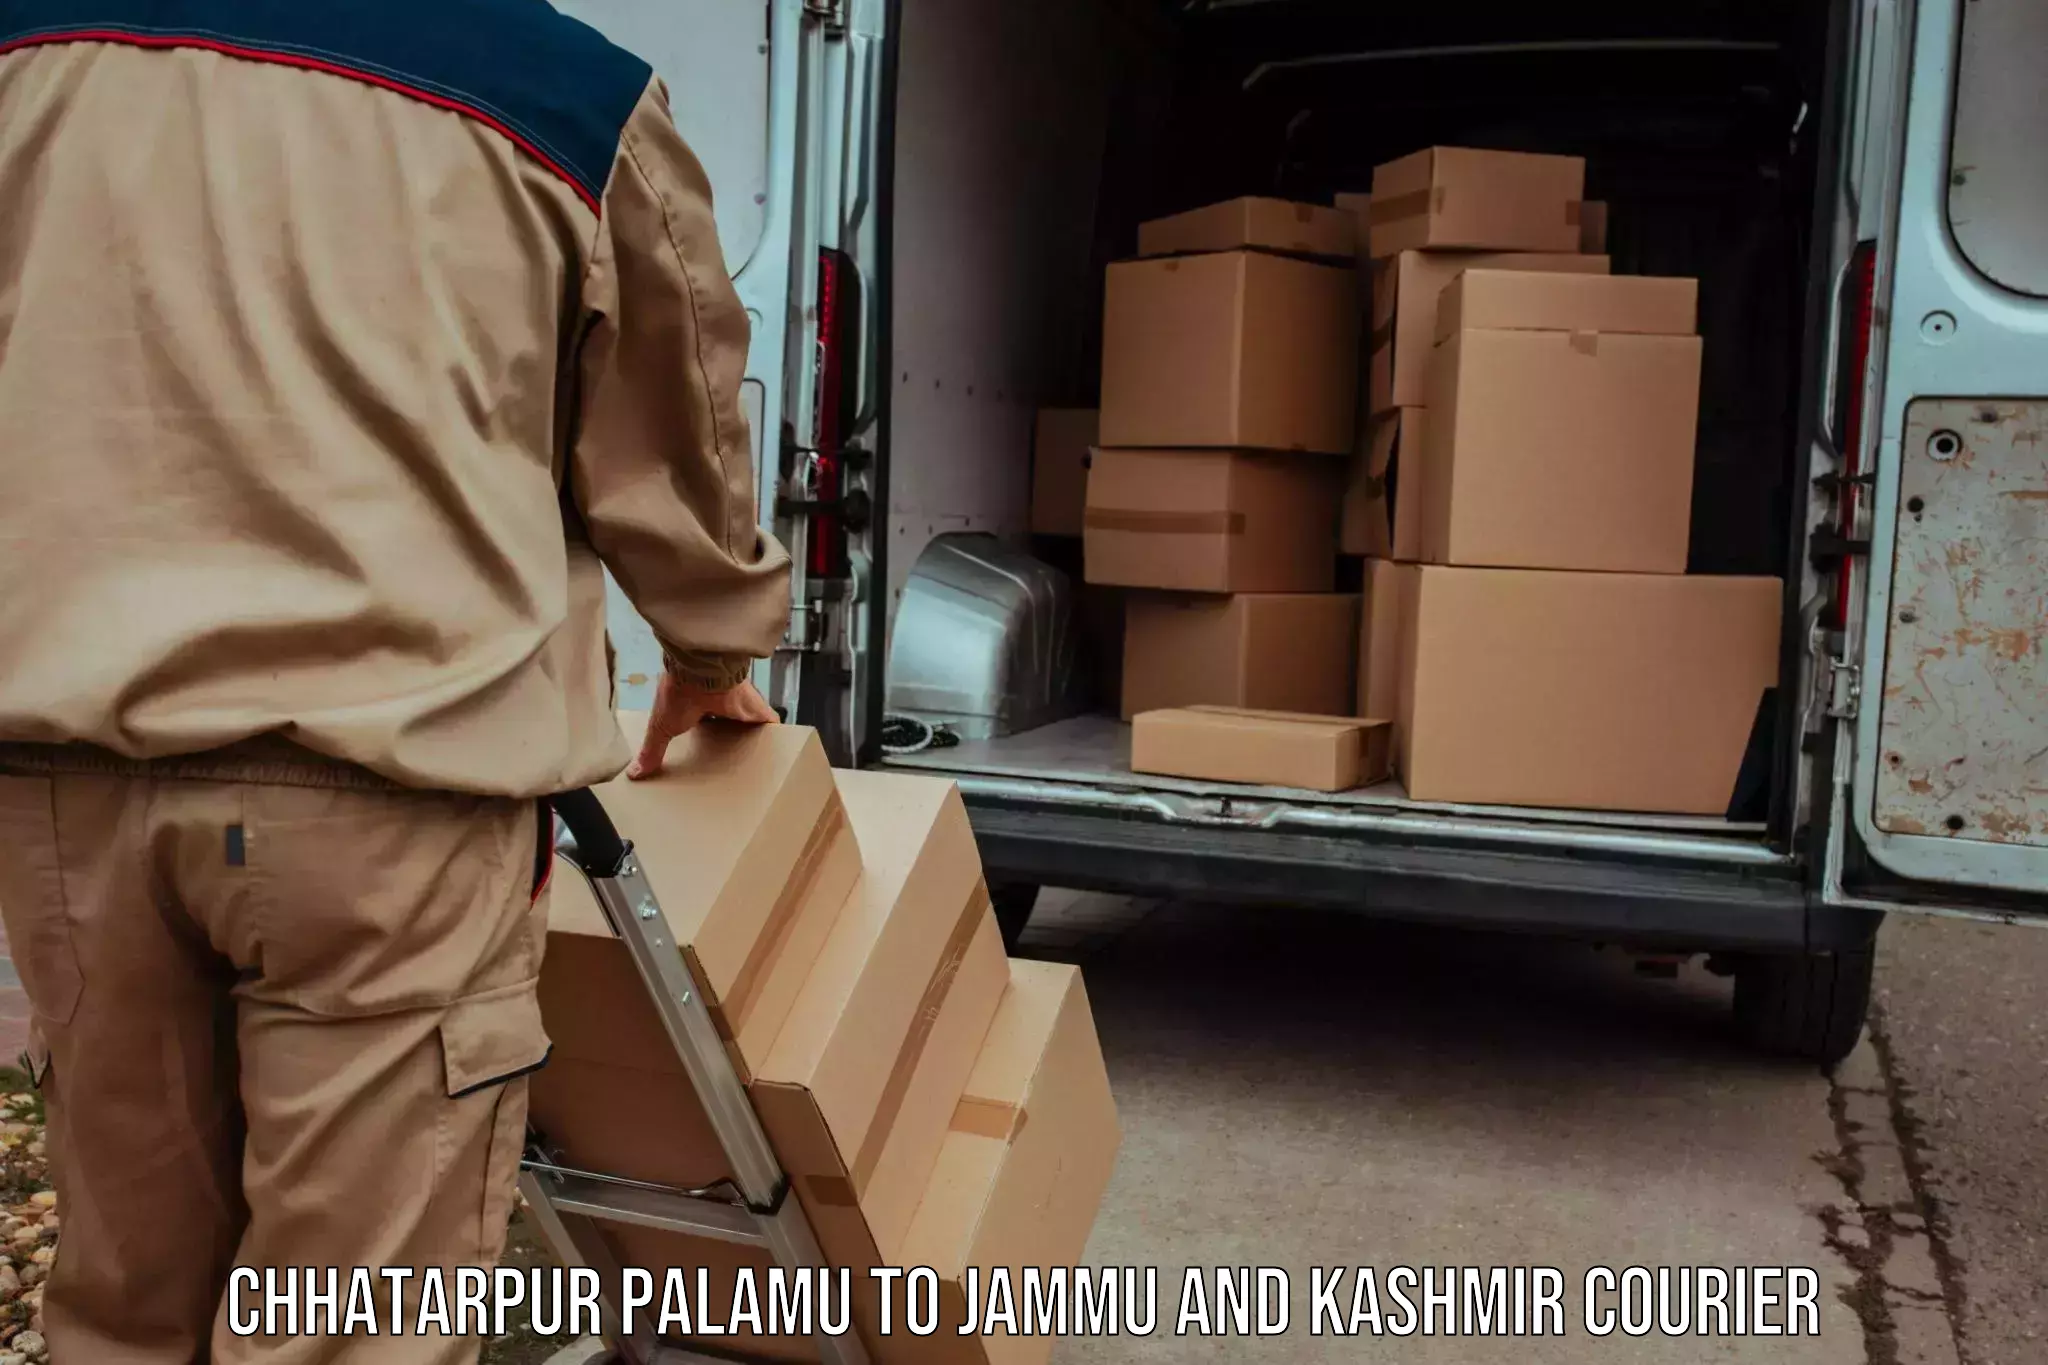 Efficient parcel service Chhatarpur Palamu to Samba